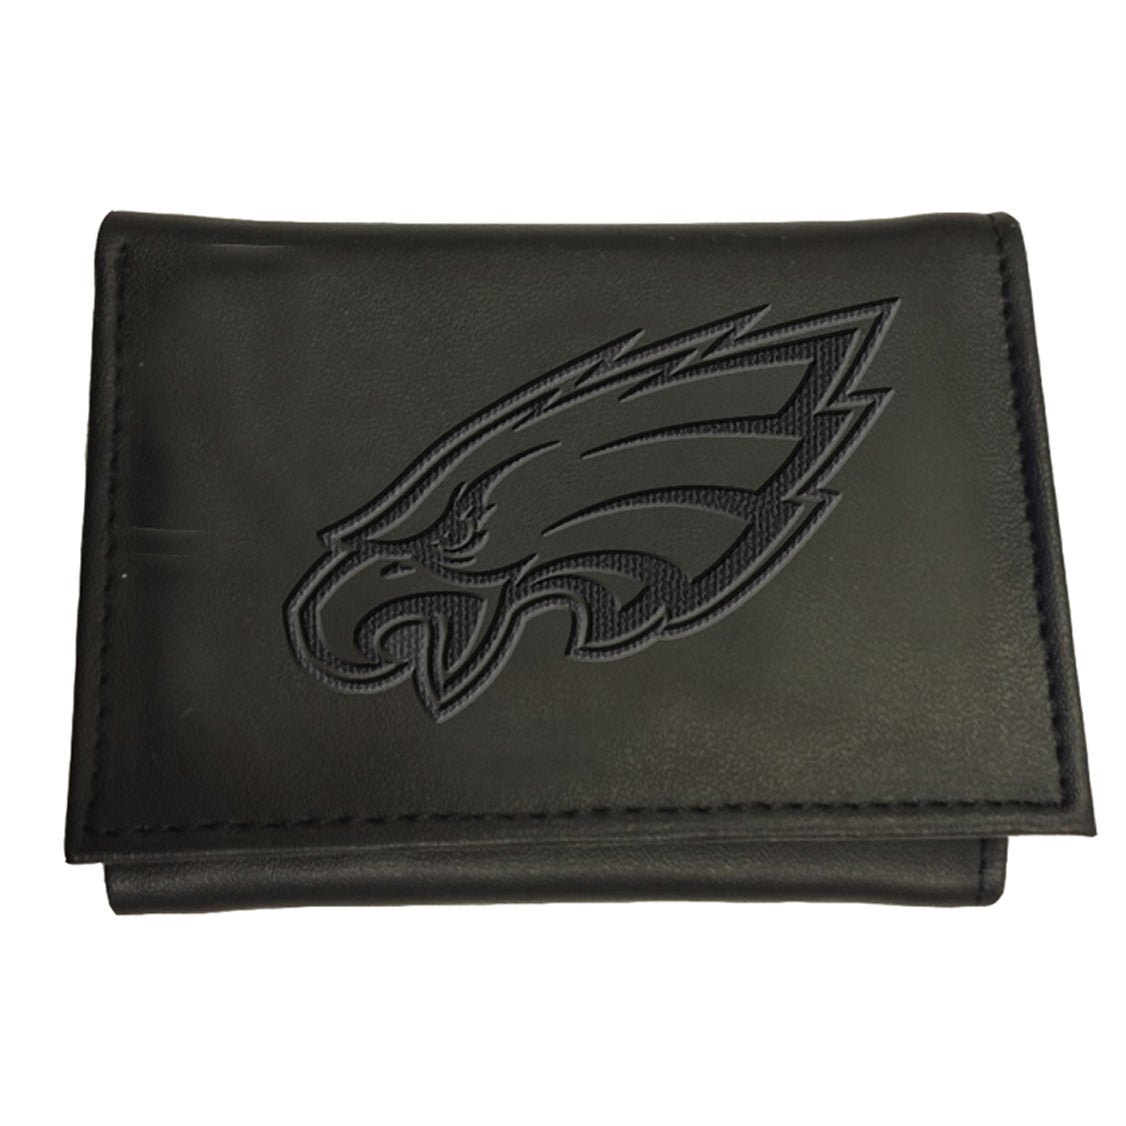 Philadelphia Eagles Tri-Fold Leather Wallet